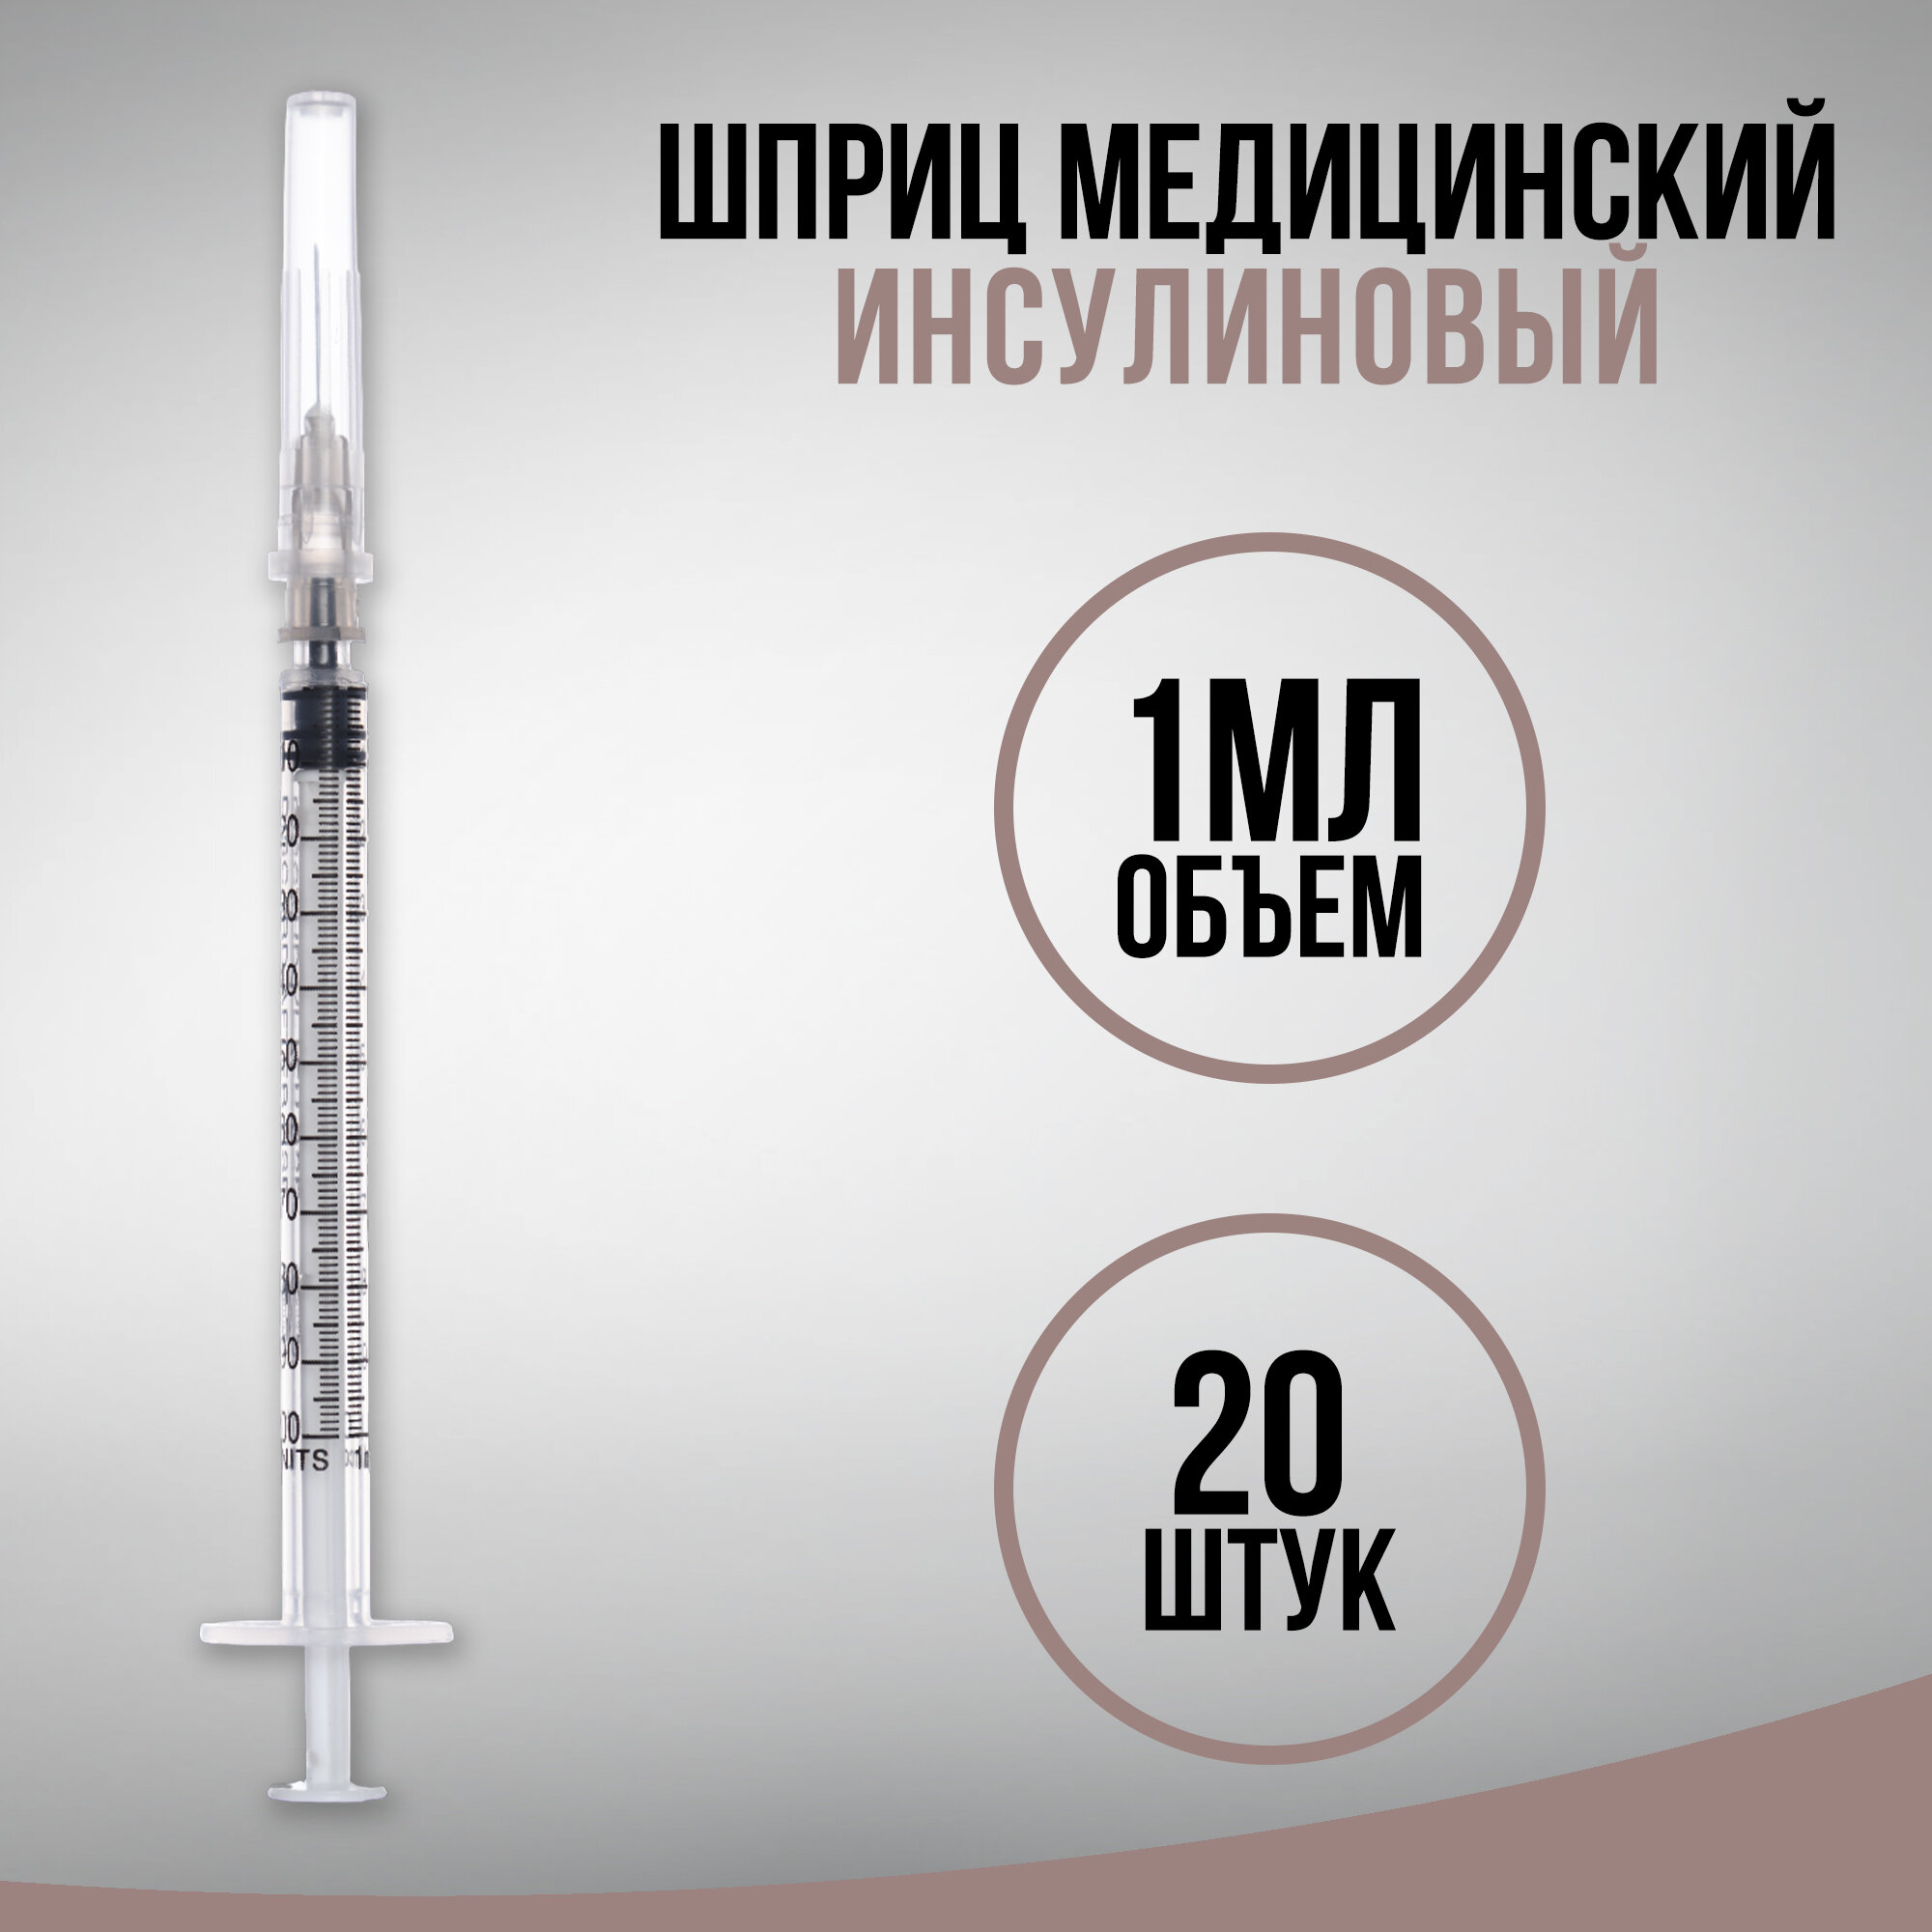 Шприц инсулиновый медицинский одноразовый 3-х компонентный U-100, 1 мл, с иглой 0,40 х 13,0 - 27G, 20 штук